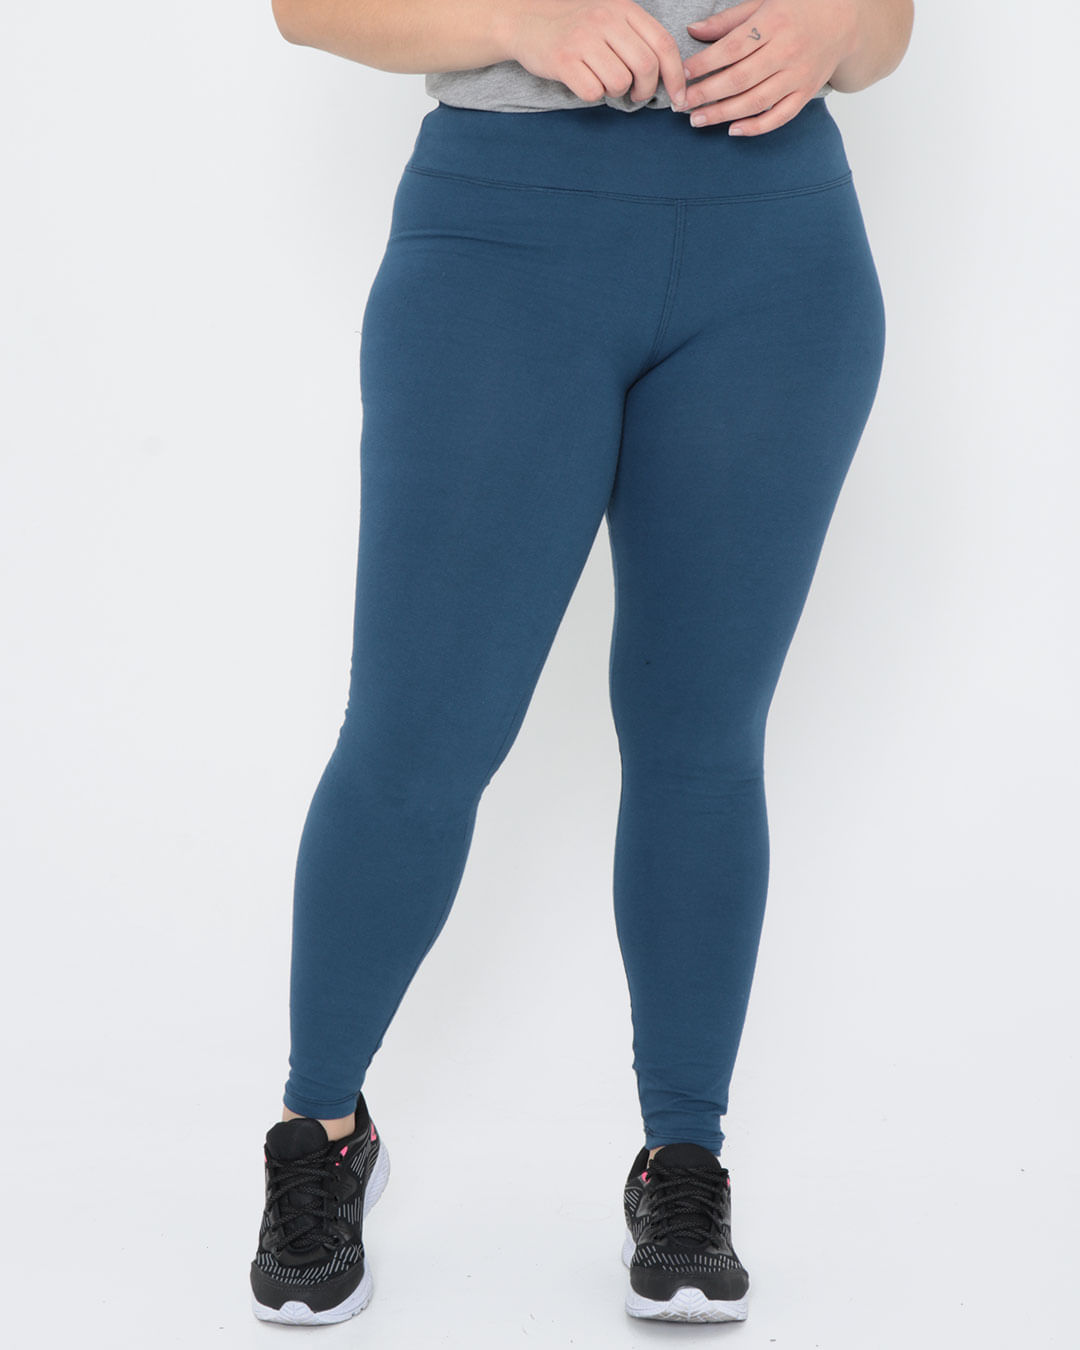 Calça Legging Feminina Fitness Plus Size Básica Azul Marinho